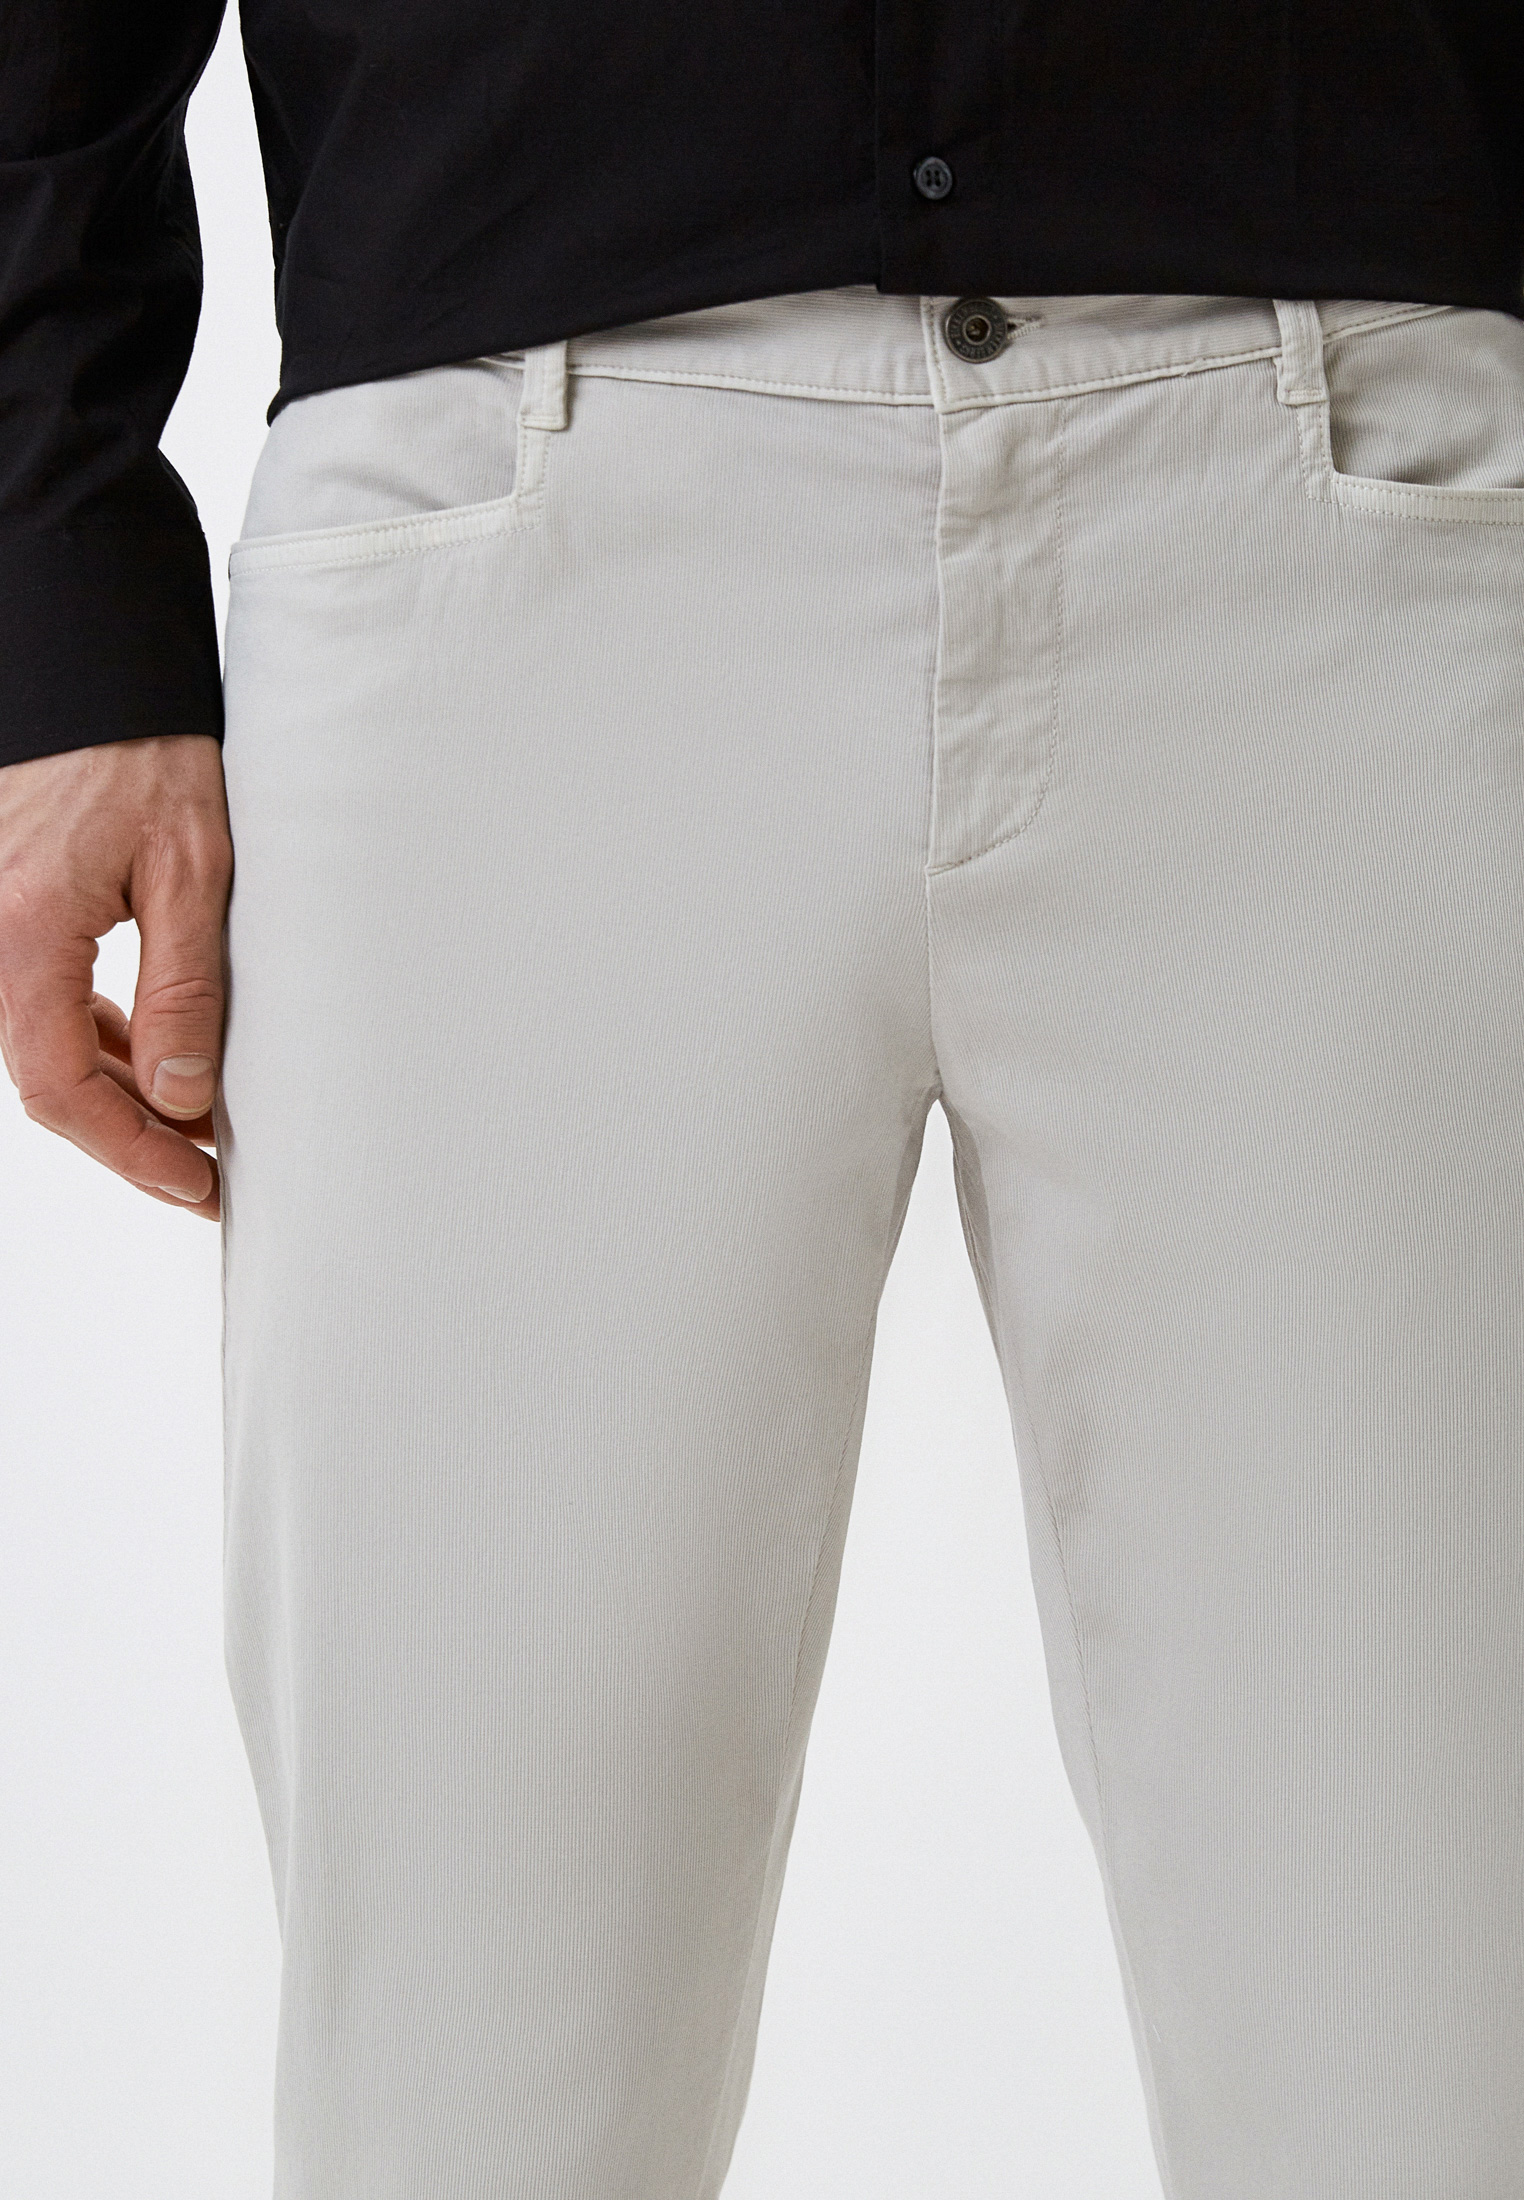 Мужские повседневные брюки Bikkembergs (Биккембергс) C P 077 80 S 3514: изображение 4